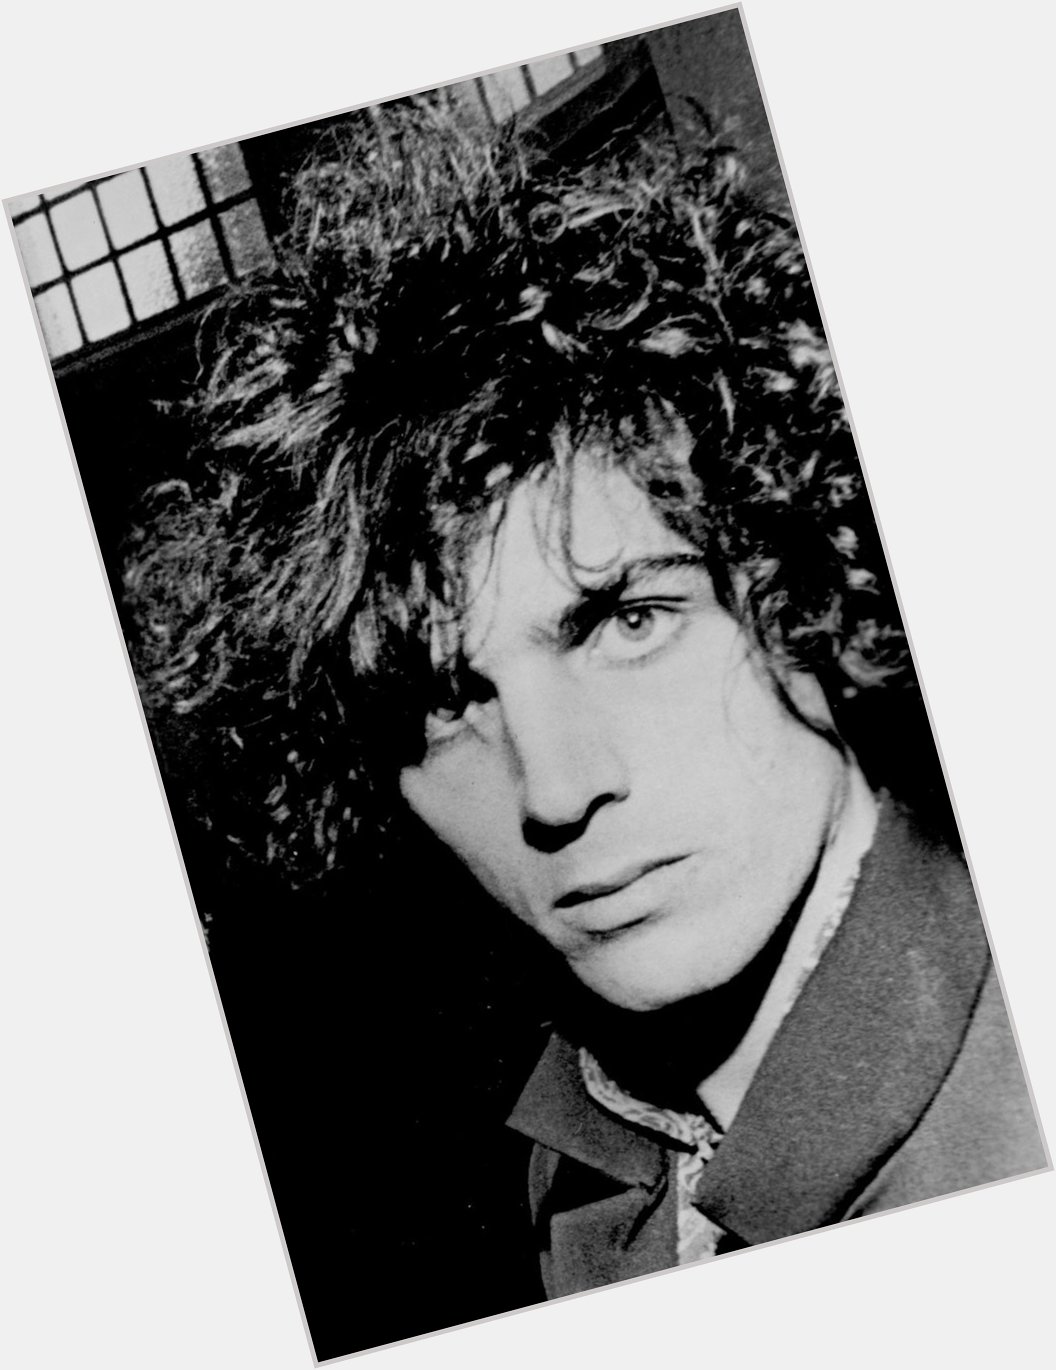 Happy 76th birthday, Syd Barrett 